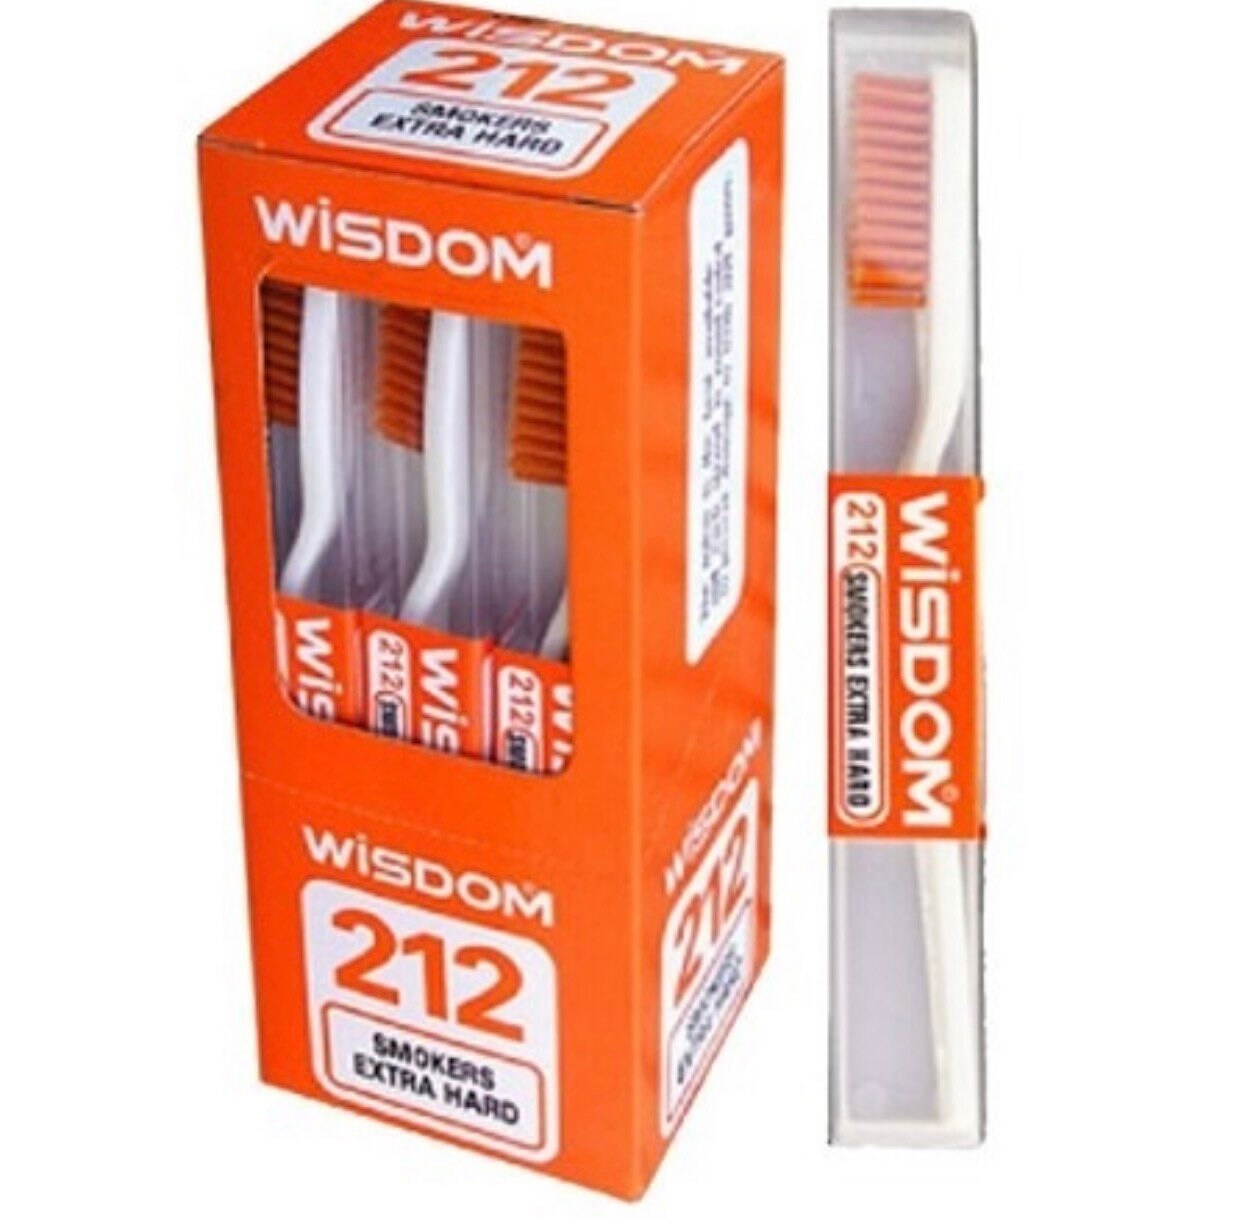 12packs Wisdom 212 Smokers Extra Hard Toothbrush